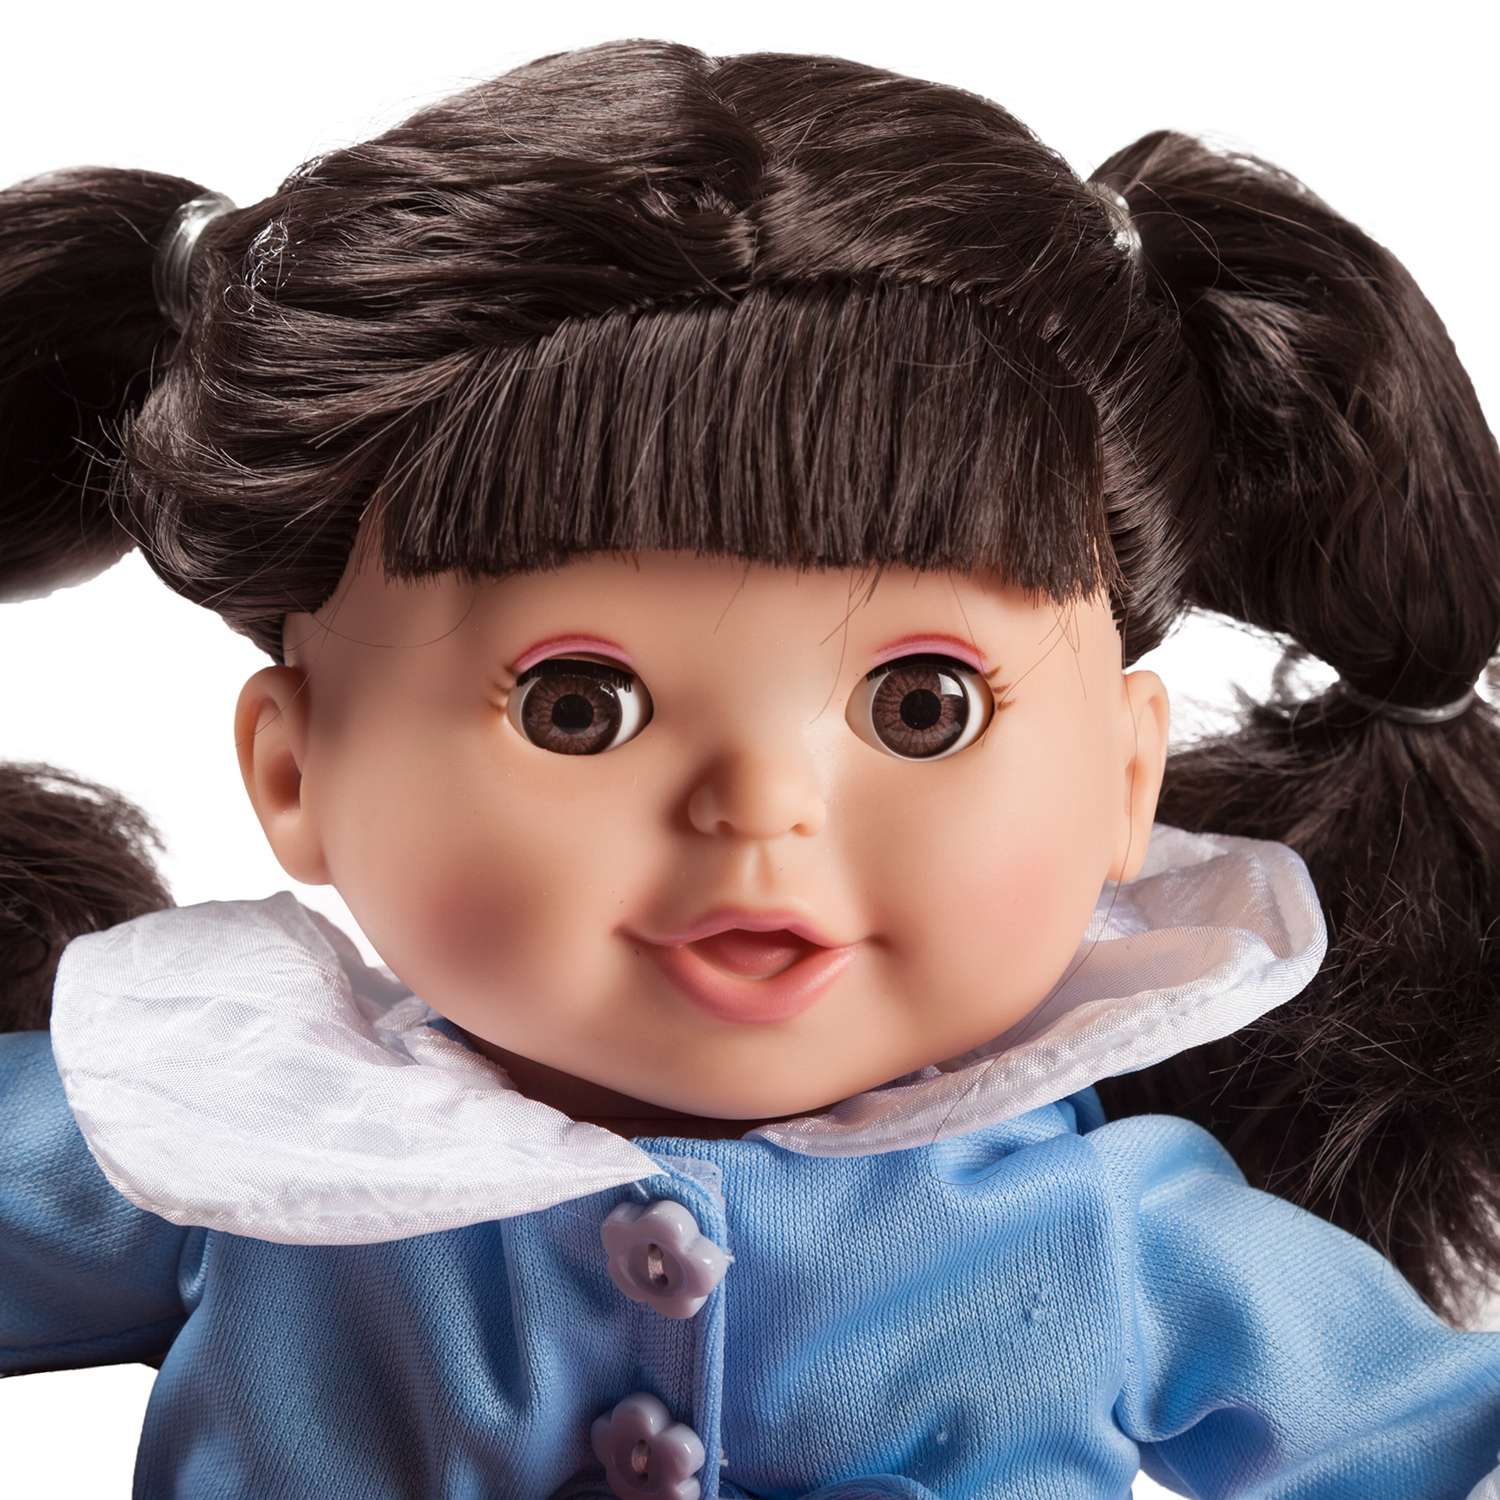 Кукла Demi Star Элизабет Брюнетка в голубой кофте розовой юбке розовых  лосинах купить по цене 5370 ₸ в интернет-магазине Детский мир